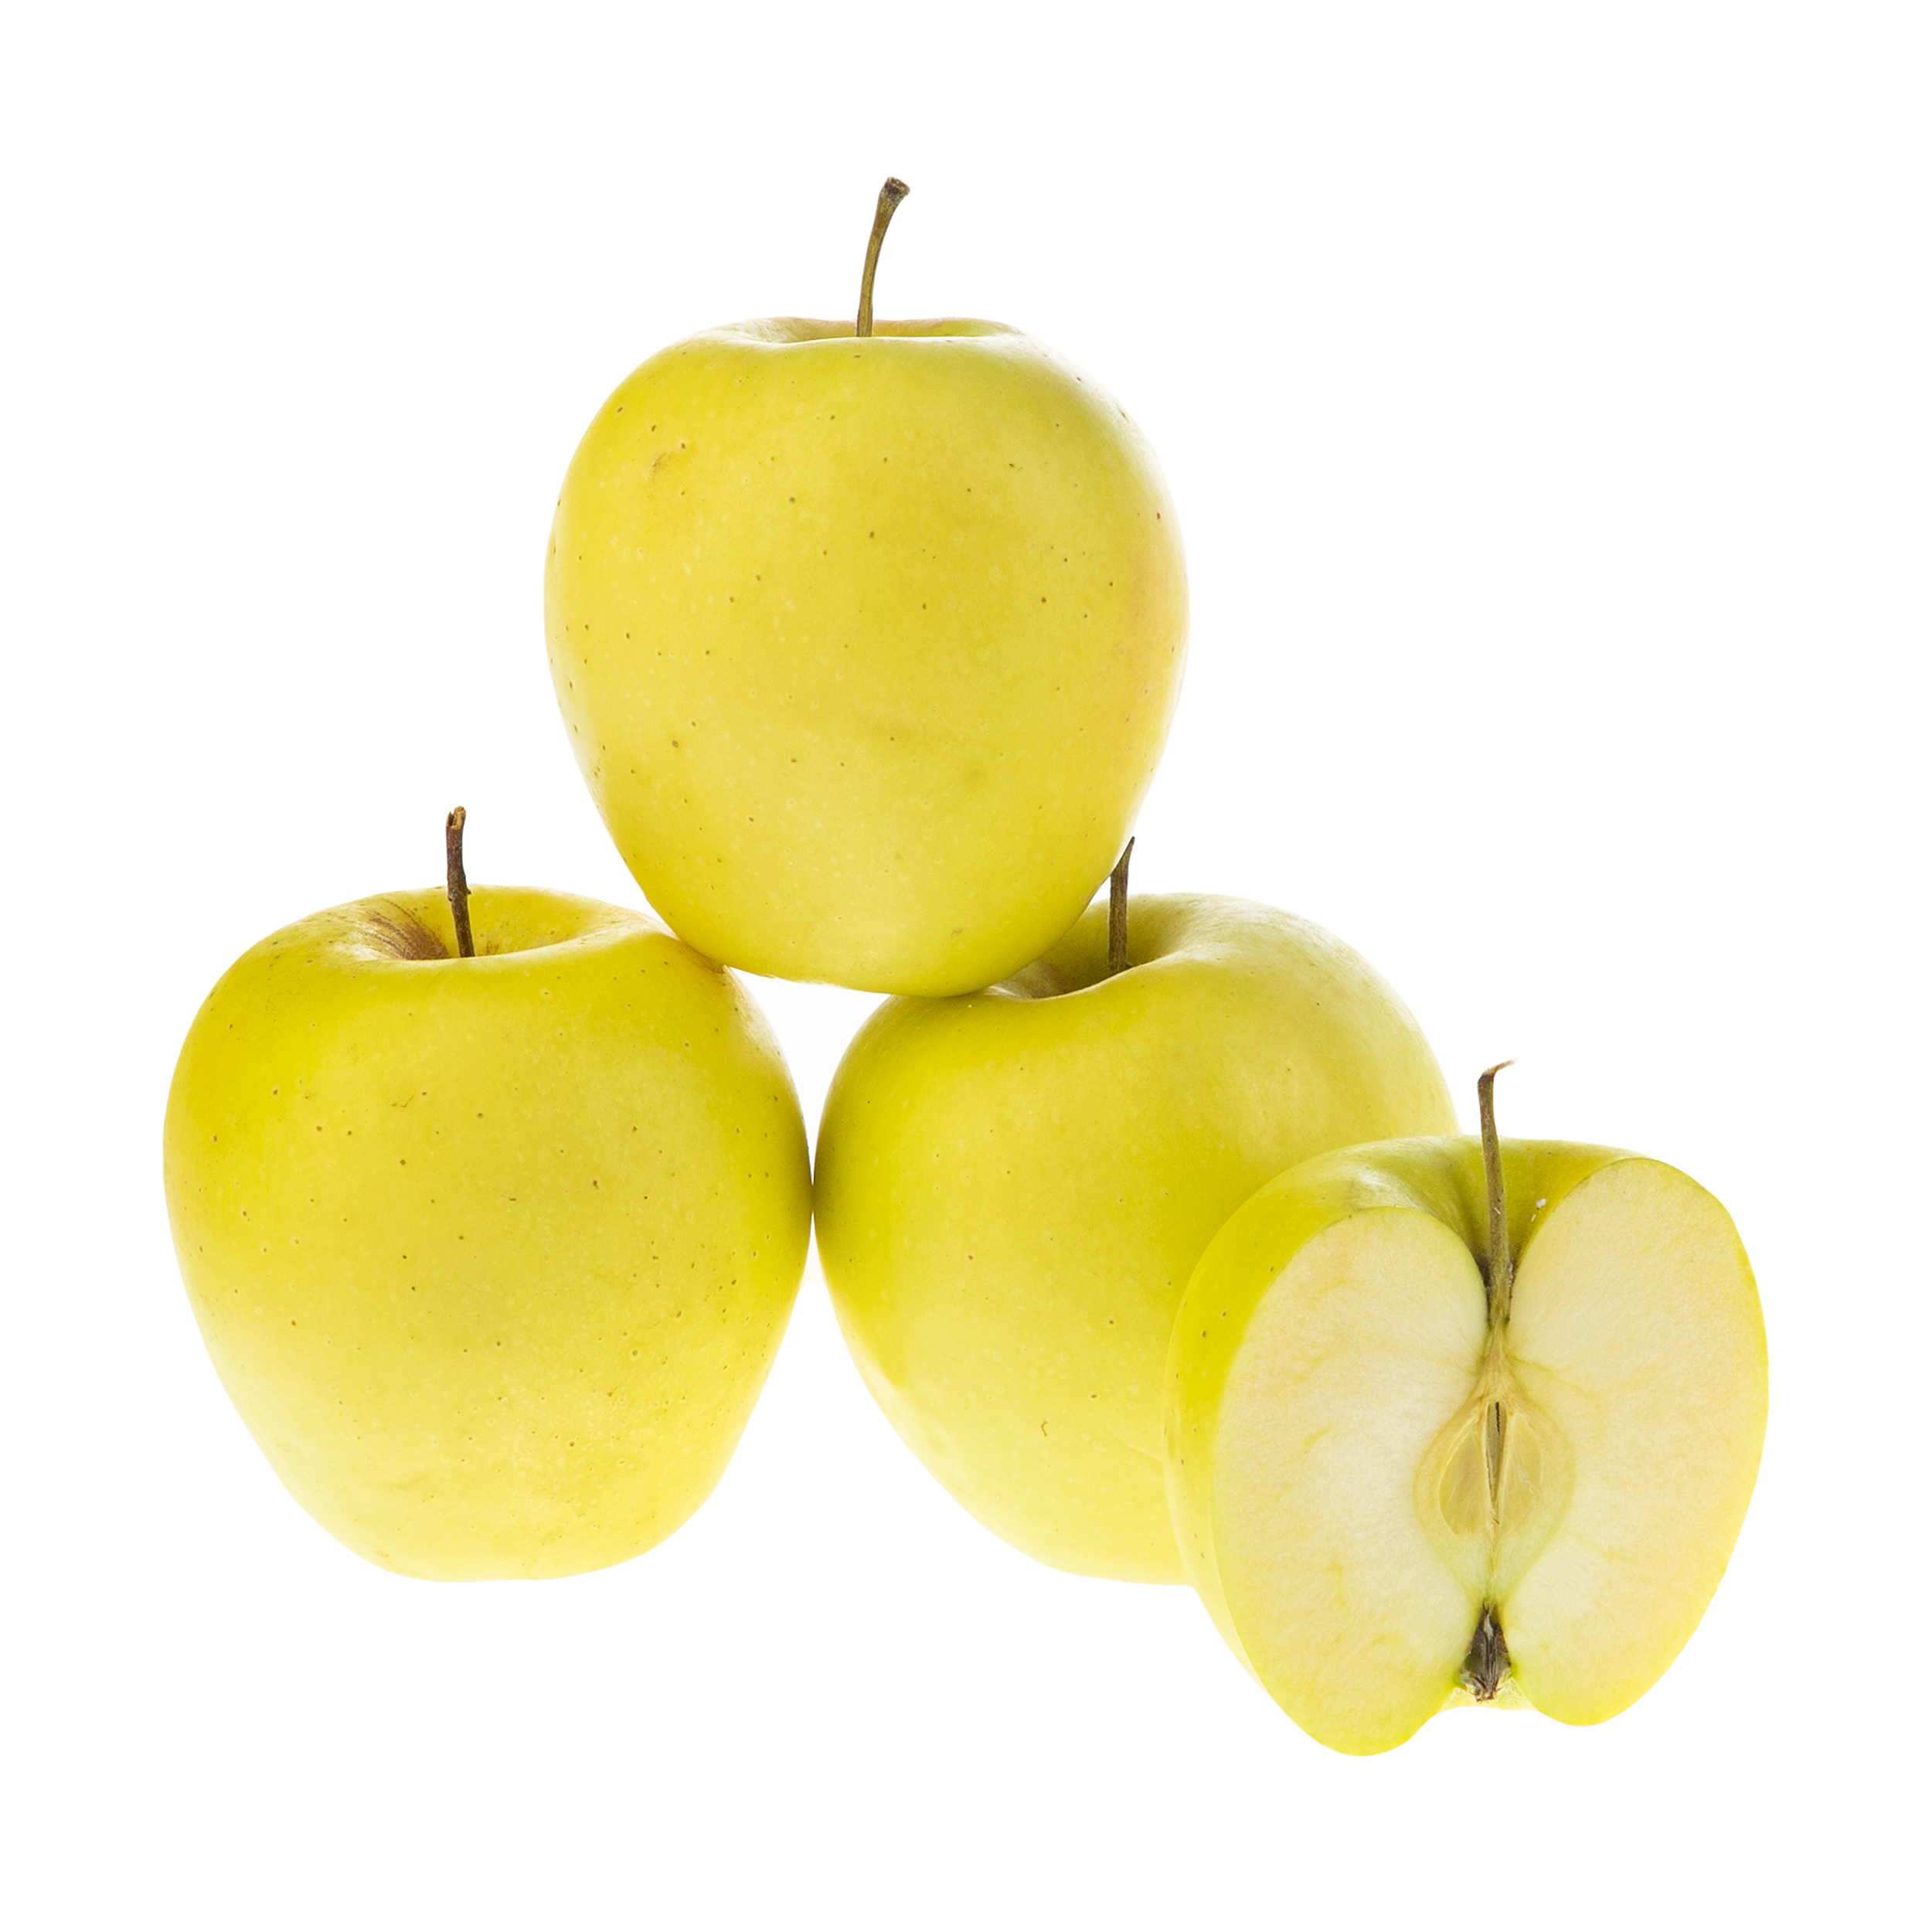 سیب زرد درجه یک سبزیکو - 1 کیلوگرم 